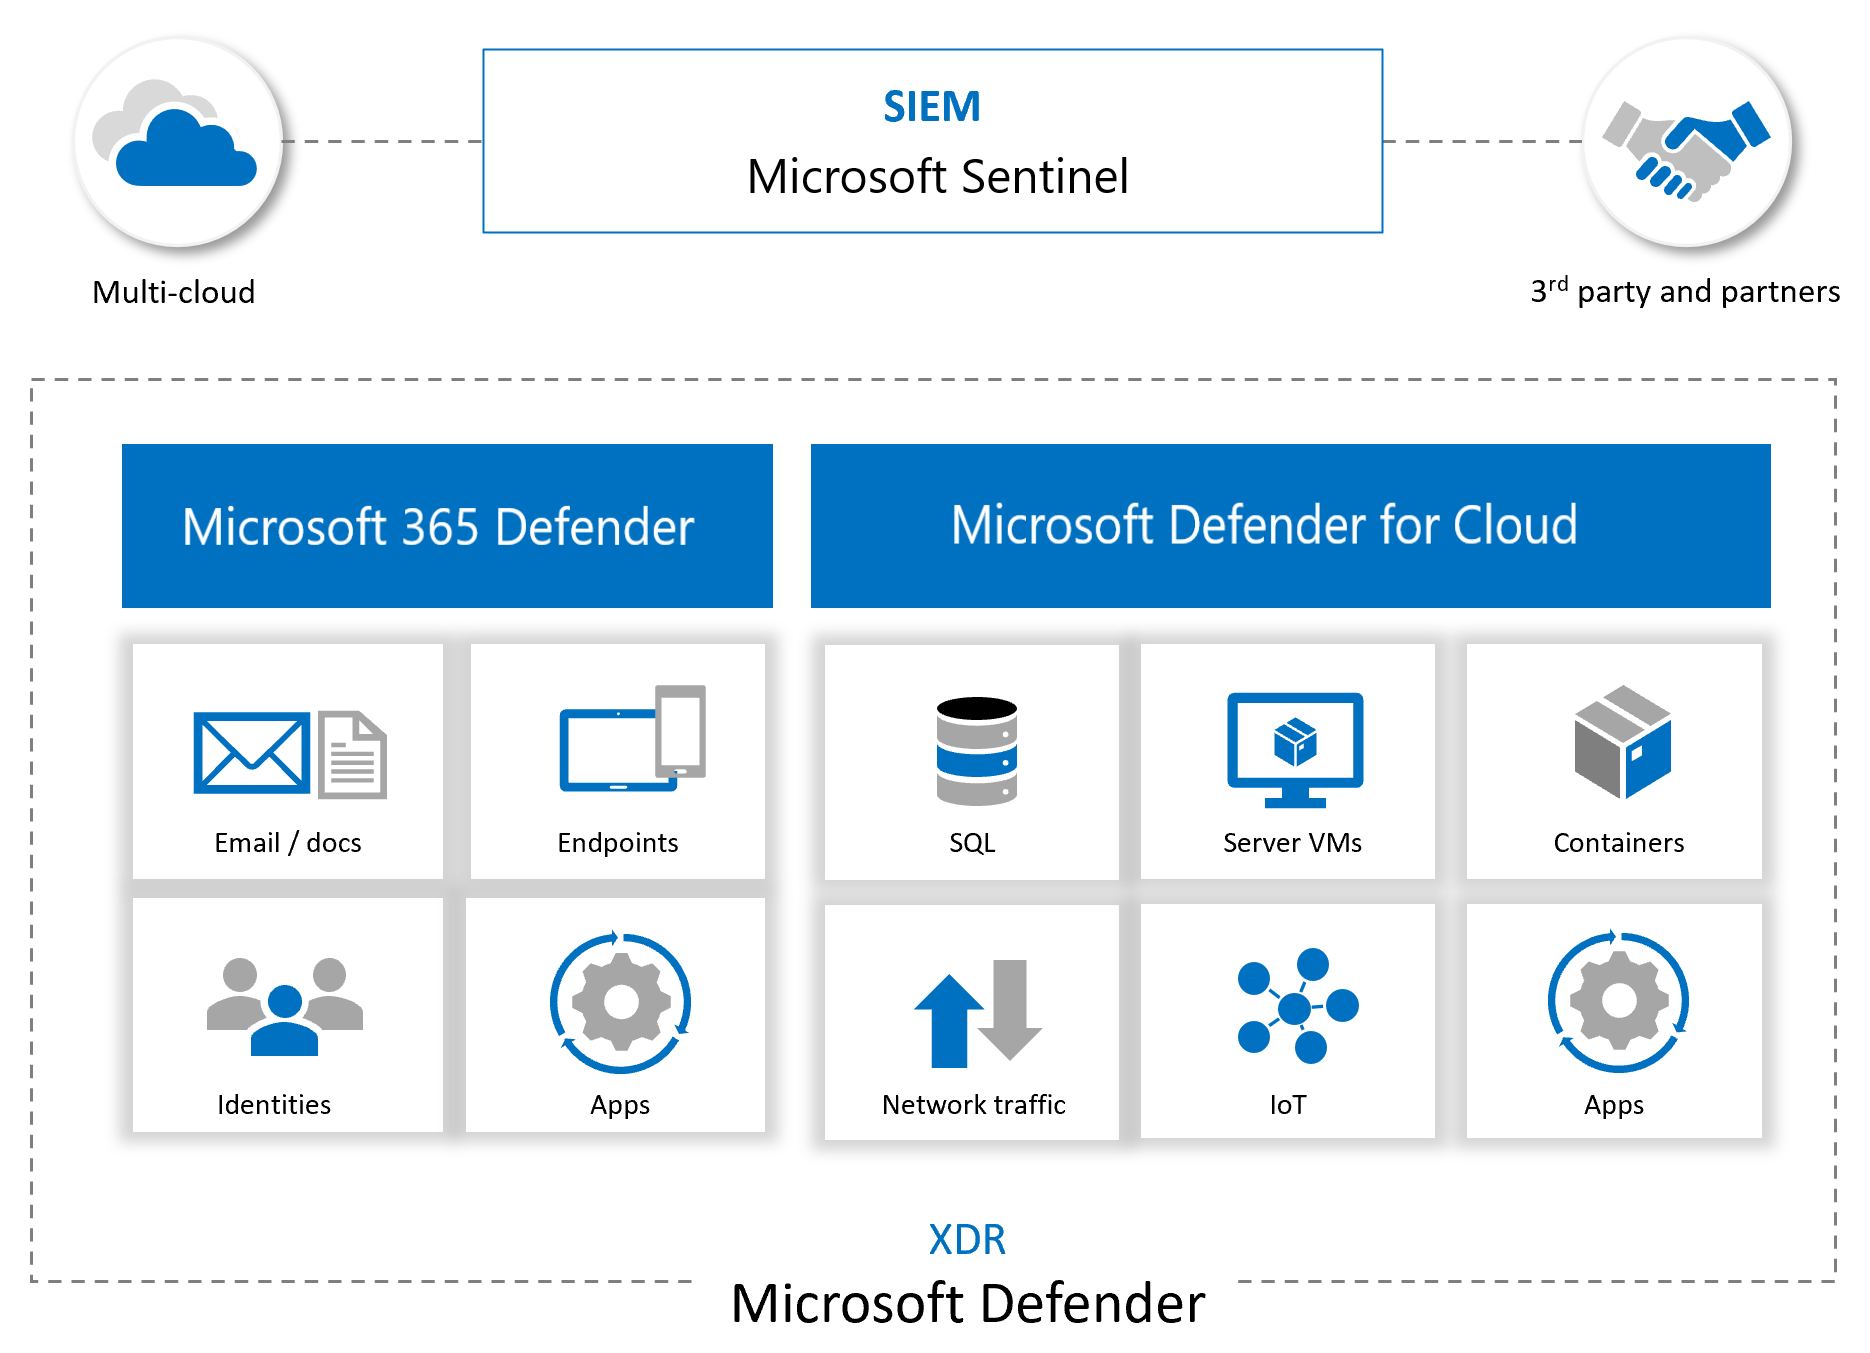 Integrace služby Microsoft Sentinel s dalšími službami Microsoftu a partnerskými službami